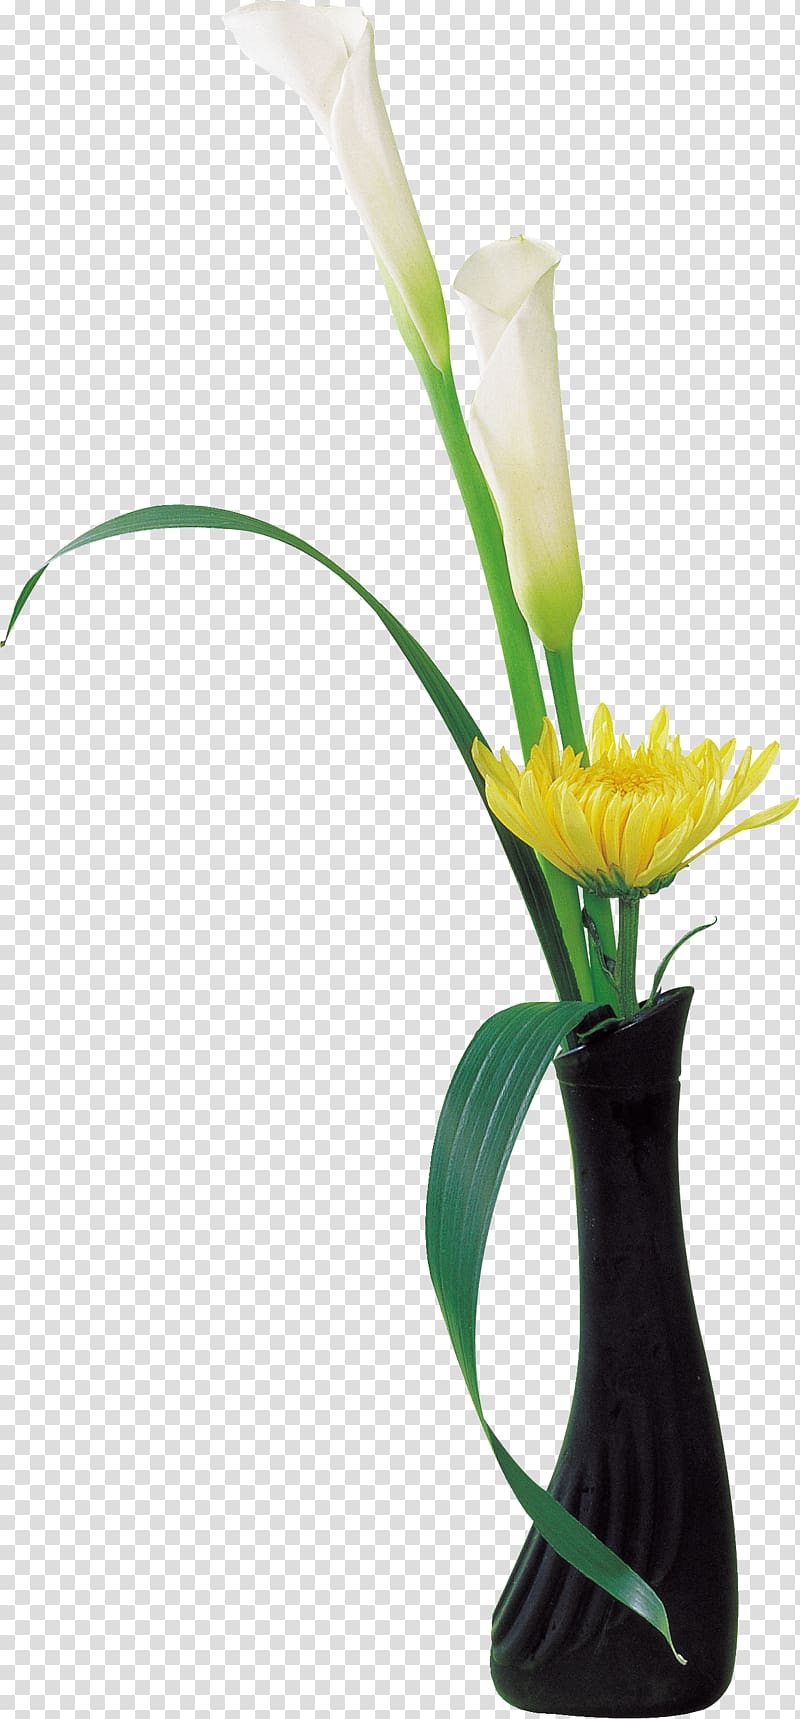 Cut flowers Vase Flower bouquet Flowerpot, chrysanthemum transparent background PNG clipart